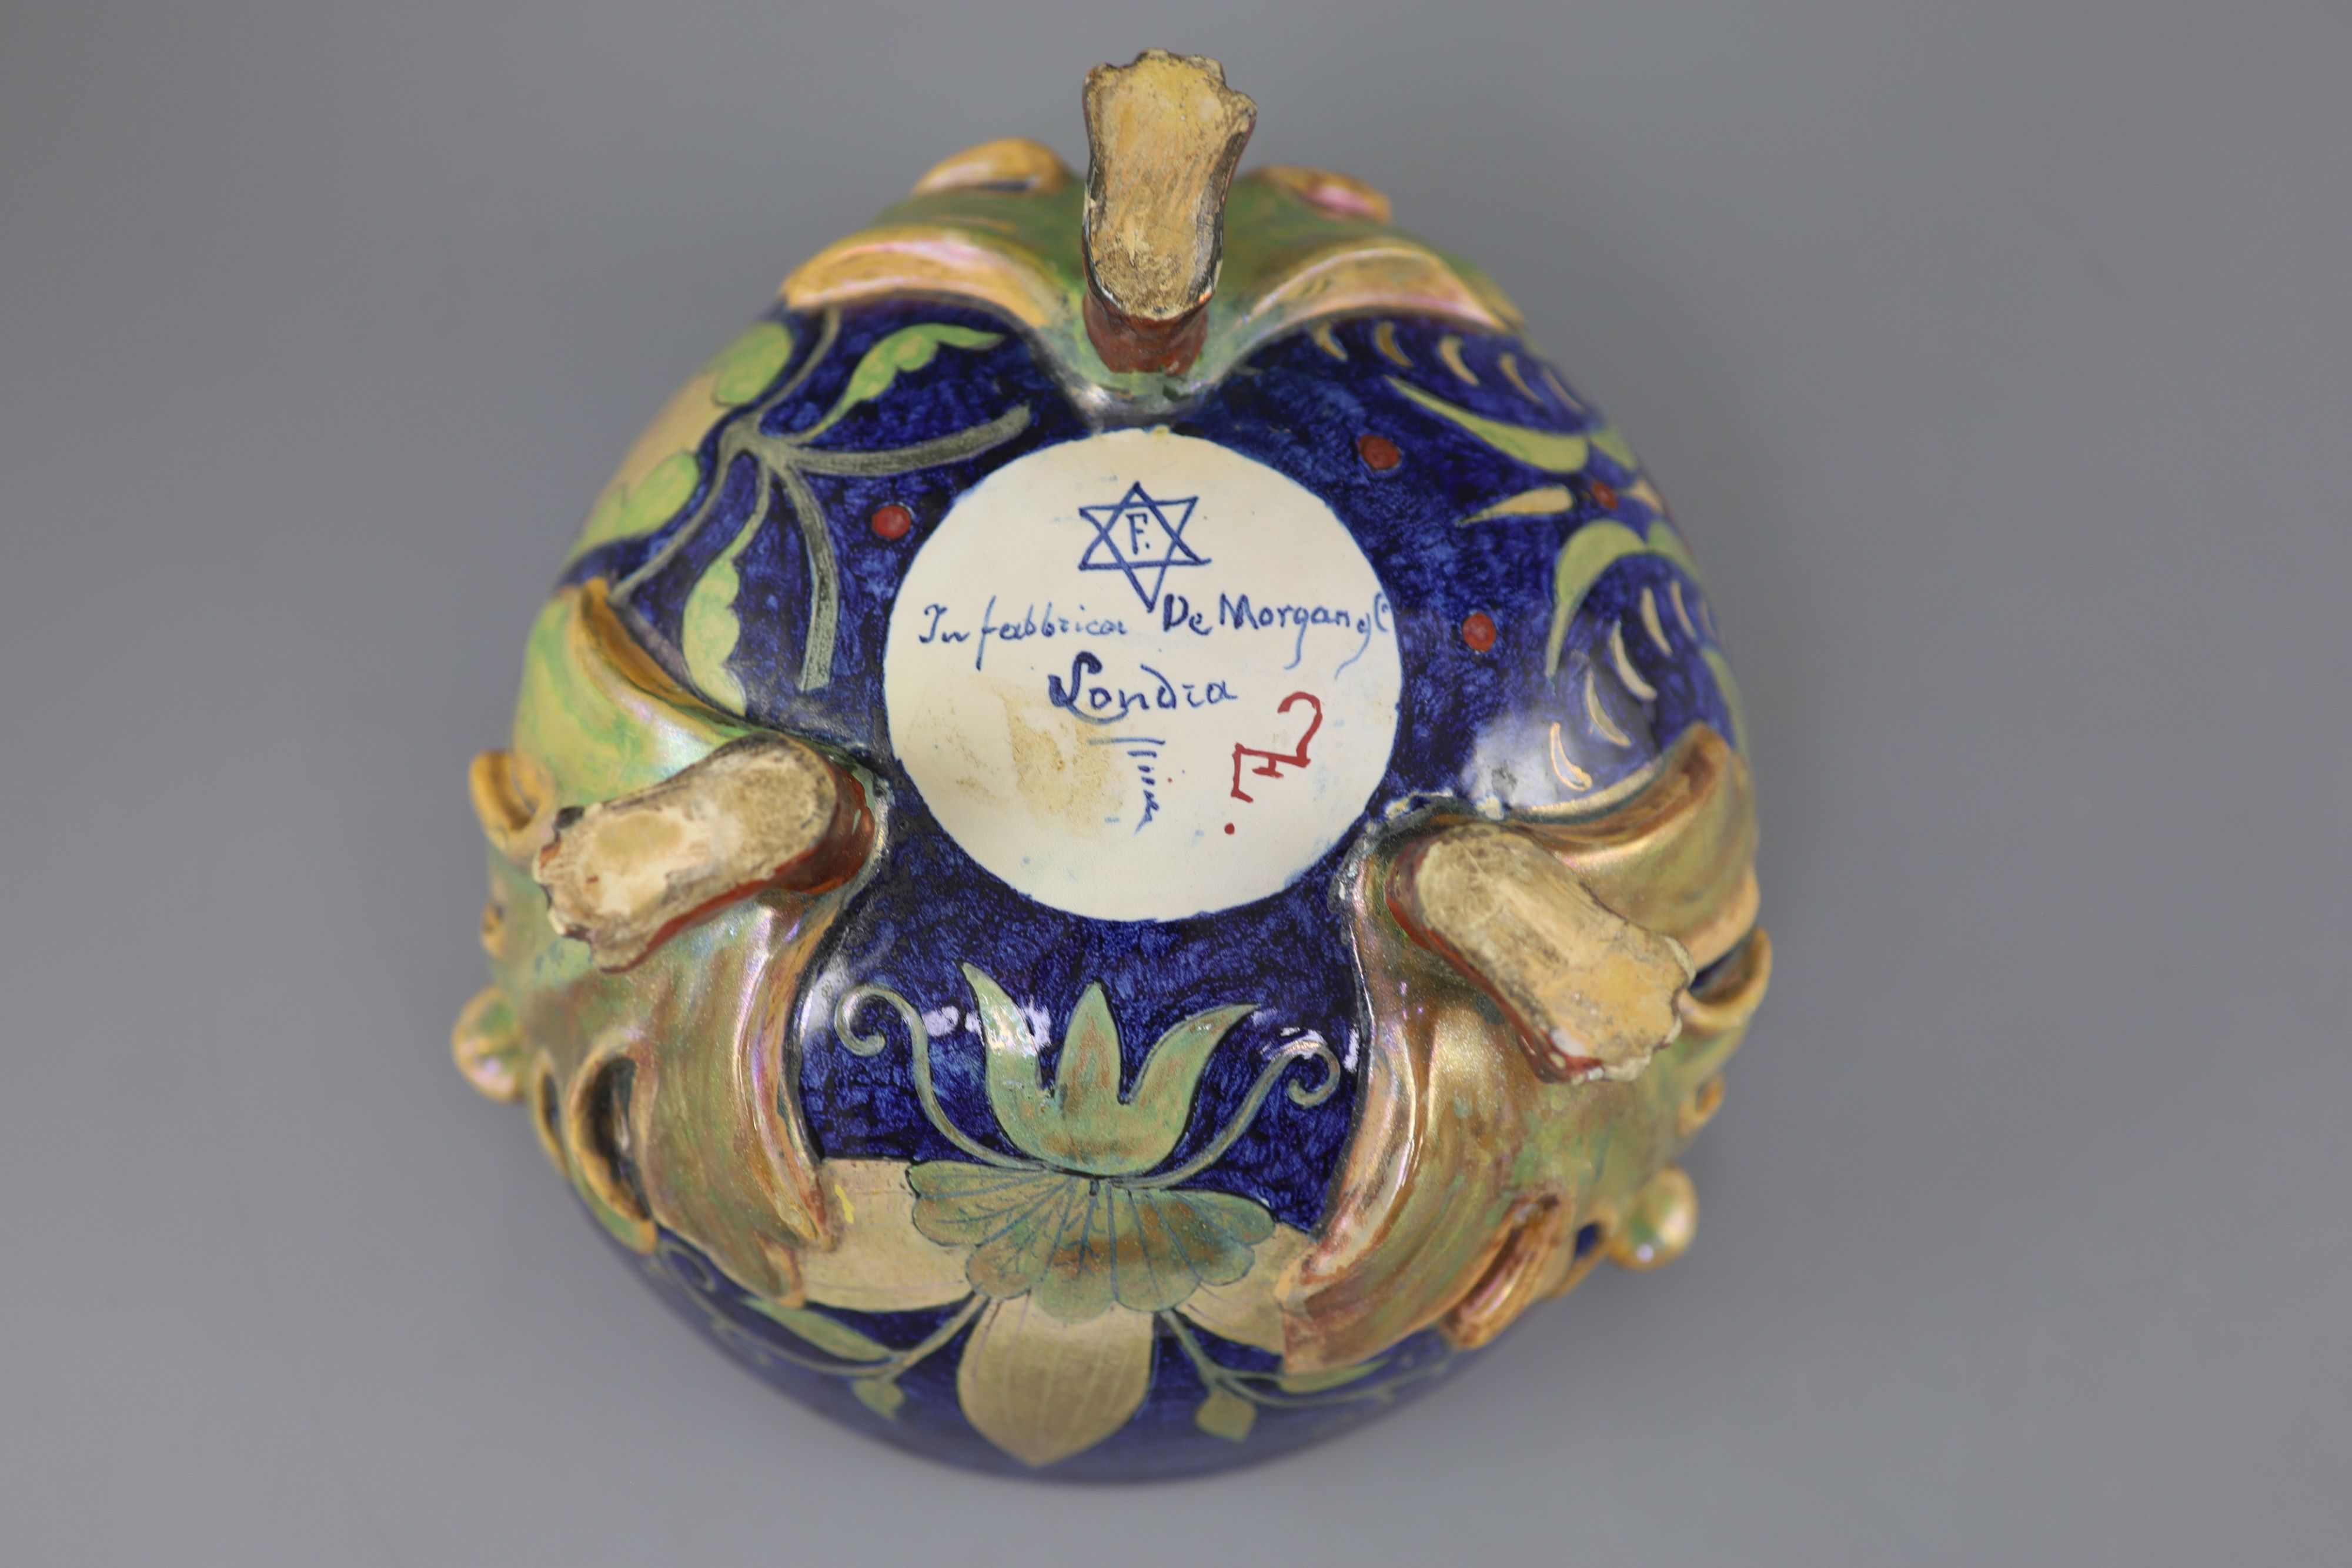 A rare William De Morgan lustre bowl, c.1890, decorated by A. Farini,